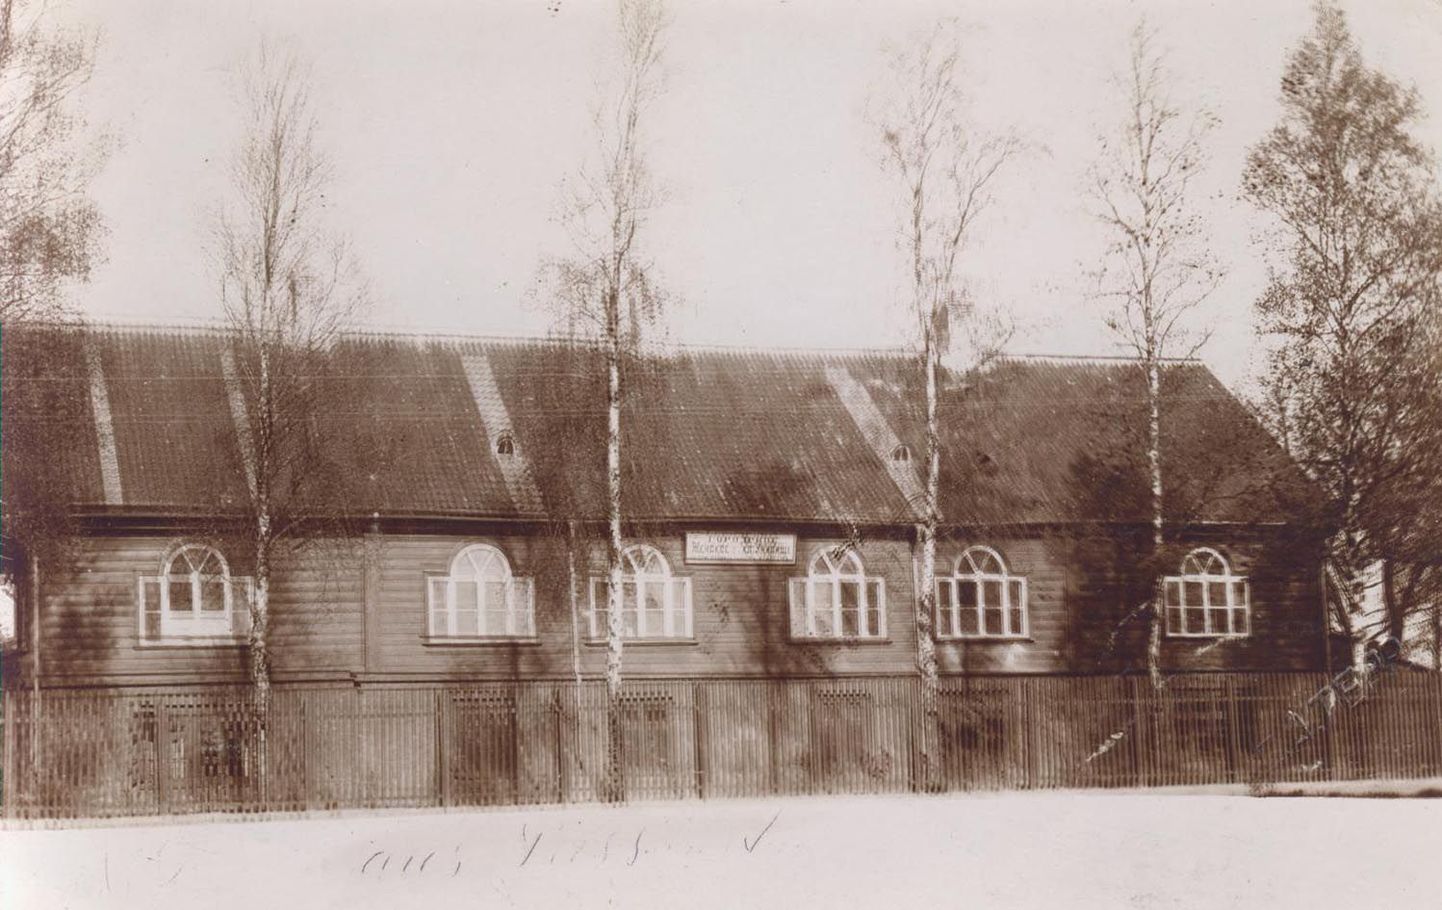 Ligi poolteist sajandit võttis Tallinna poolt kreisilinna Paidesse saabujaid vastu väärikas ja kaunis hoone, mida linnakodanikud hellitavalt Hofmanni villaks kutsusid.
1869. aastal valminud kahekorruseline maja oli valgusküllane, arvukate nelja poolega akendega, mida ülal kaunistamas veel kaar. Hoone alumine korrus laoti paekivist, ülemine ehitati puidust. Maja ette rajati puulipikutest aed ja tänava serva istutati pikk rida noori kaski.
Koguteosest «Järvamaa» on lugeda, et 1902. aasta oktoobris kolis Paide linna tütarlastekool oma senisest kodust, pastor August Wilhelm Hupelilt kingituseks saadud turuplatsiäärsest hoonest Hofmanni villasse.
«Klassiruumid on valgusküllased, ruumikad ja õhurikkad. Ka ventilatsiooni eest on hoolt kantud. Teisel korrusel asuvate kooliruumide kõrgetest akendest on avar vaade välja ja avatud akendest tulvab sisse värske õhk. Tänavalärm ja «väetiste» lõhnad seal ei sega. Suur «ringiturnimise» plats kutsub noori kehalisele tegevusele,» ülistas 17. oktoobril 1902 toonane Paide Teataja uut õppehoonet.
1908. aastal (12.17.1908) saadab neiu Salme sõbrannale Mariele Weissensteinist Pernausse (Pärnusse) tervituskaardi koolimaja vaatega, mille on jäädvustanud Paide päevapiltnik Carl Aleksander Tepp (ülemine foto).
«Liebe Marie! Schick Dir unsere Schule damit Du Dich erinnerst, wenn wir zusammen lernten.» («Kallis Marie! Saadan sulle meie kooli, kus me üheskoos õppisime, nagu sa mäletad.»)
Paide linnaisad olid saatnud tsaarivalitsusele korduvaid taotlusi saada luba asutada gümnaasium. Lõpuks see ka saadi ning esimesena hakkasid Paides gümnaasiumi õppekava järgi haridust saama tütarlapsed. Endise Hofmanni villa esiküljele ilmus suur silt «Zenskaja Gimnazi».
1910. aastal valmis Posti tänaval uus koolimaja, mis oli plaanitud poeglaste linnakoolile. Veri oli aga ka vanasti paksem kui vesi: Eestimaa kuberner Izmail Korostovets otsustas anda uue hoone siiski tütarlastekooli kasutusse, kuna selle direktor Maria Bõstrova oli tema sugulane.
Poisid saadeti õppima tütarlastekooli endisesse hoonesse Tallinna tänaval. Nii sai Hofmanni villast Paide poeglaste reaalgümnaasium, hiljem Paide meesreaalgümnaasium (foto 2).